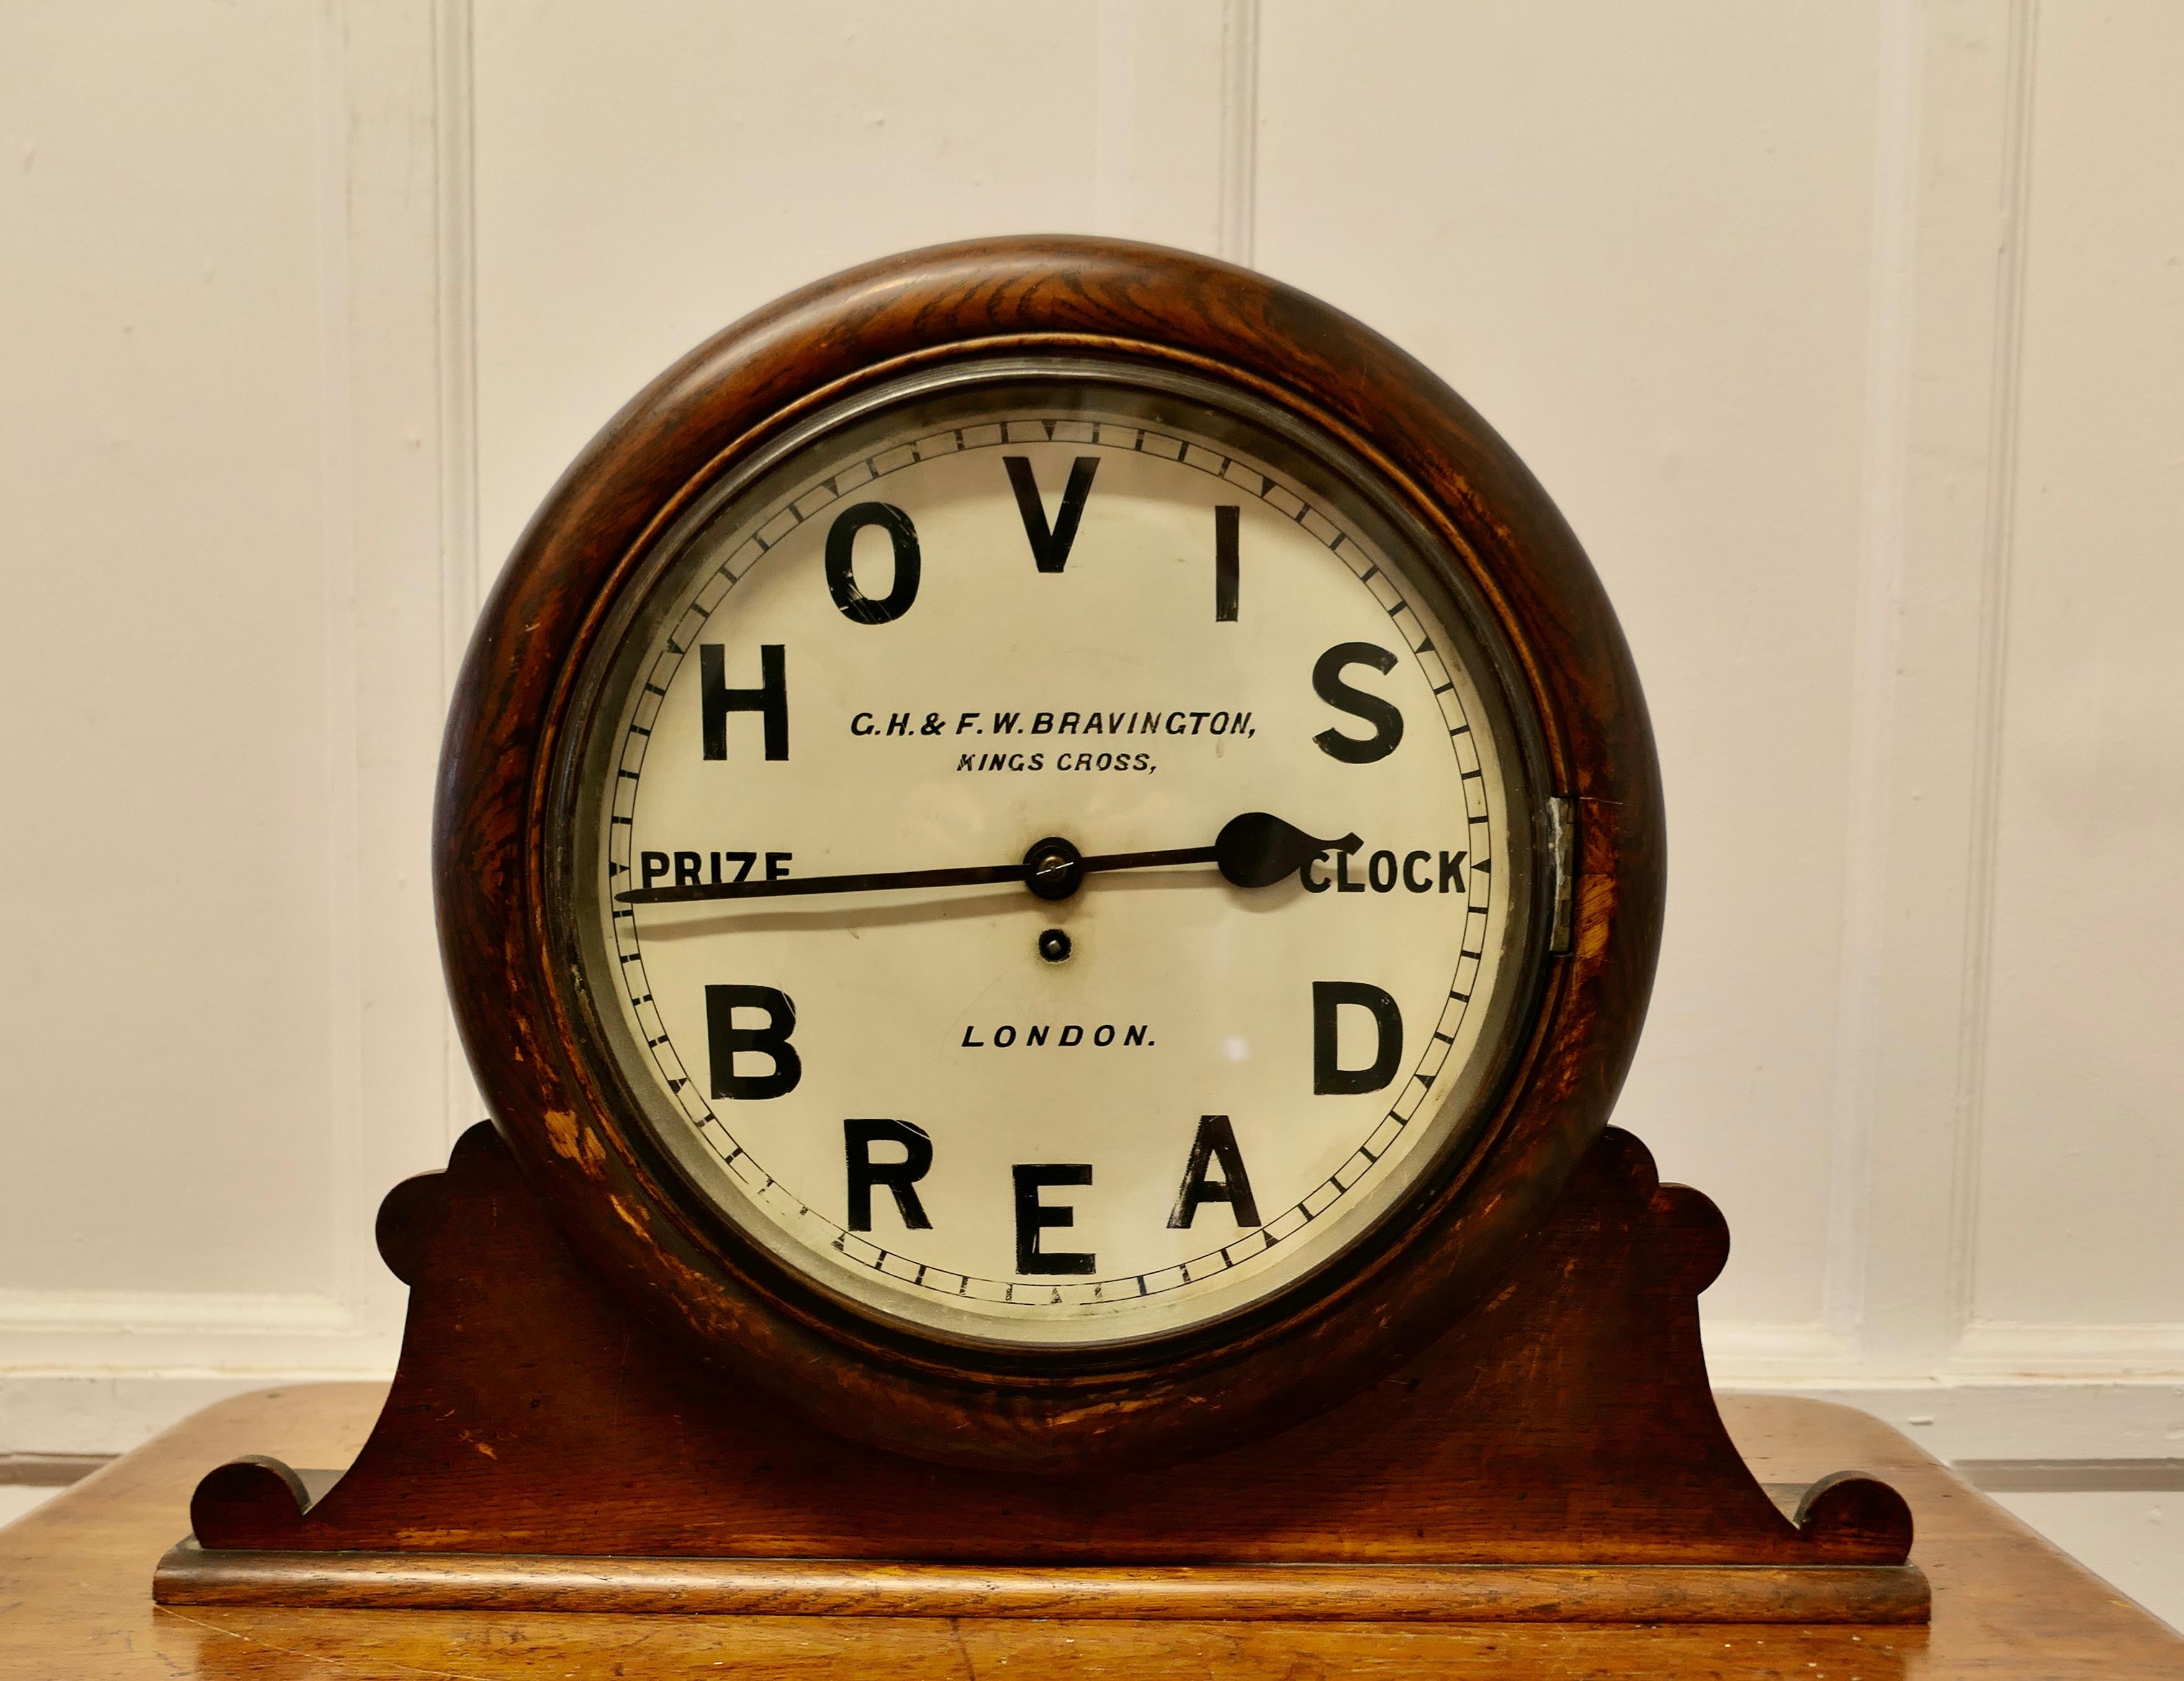 Original HOVIS-Preisuhr von G.H.& F.W. Bravington London

Uhren wie diese wurden von Bäckereifachgeschäften gewonnen und von Hovis überreicht; dies war eine sehr prestigeträchtige Auszeichnung für den Empfänger
Hergestellt von Bravingtons und als